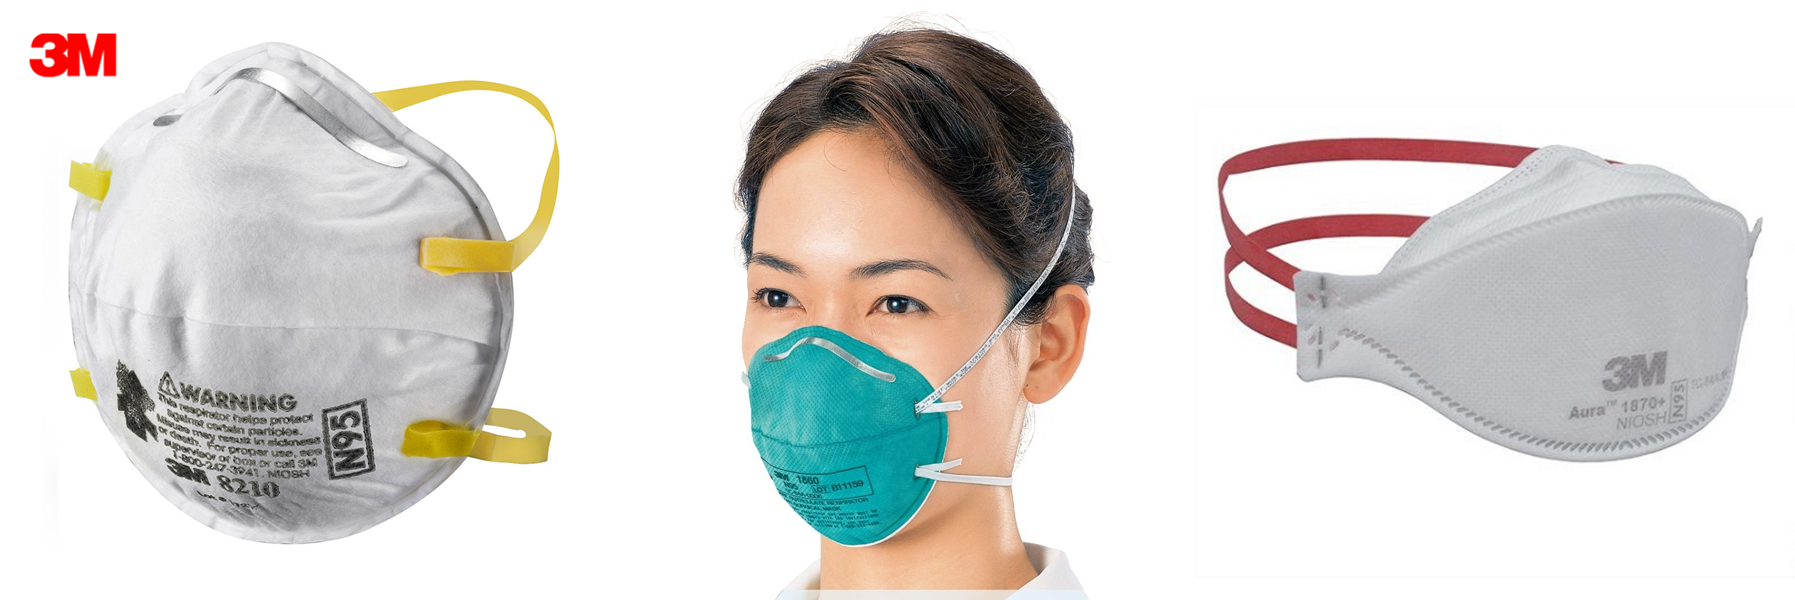 fake respirator mask 